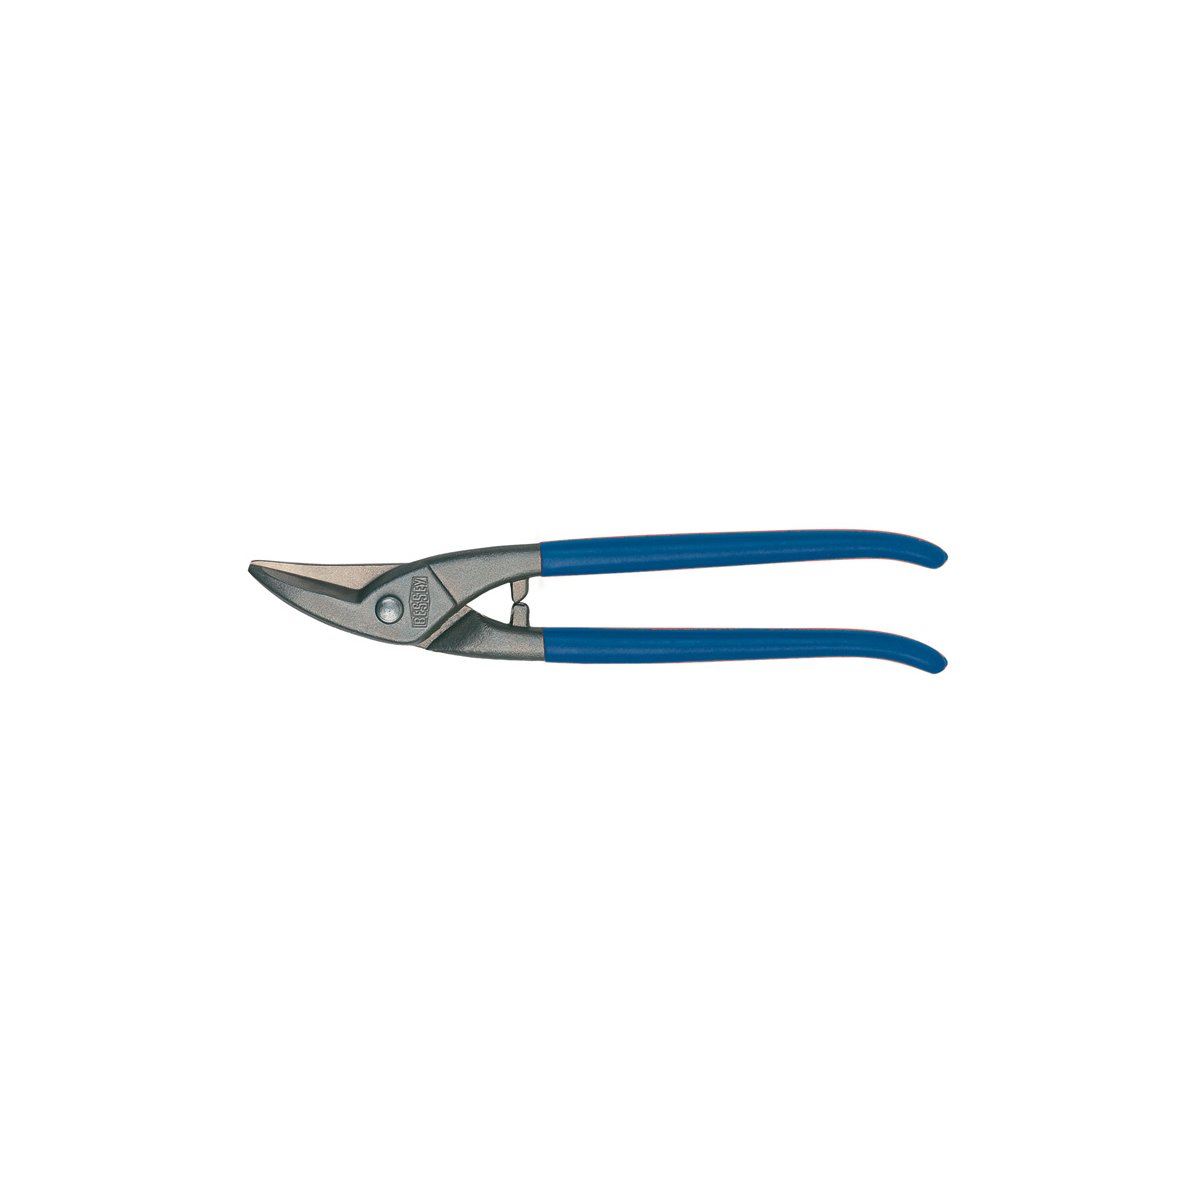 D207-300 Ножницы по металлу, для прорезания отверстий, правые, рез: 1.0 мм, 300 мм, короткий прямой и фигурный рез